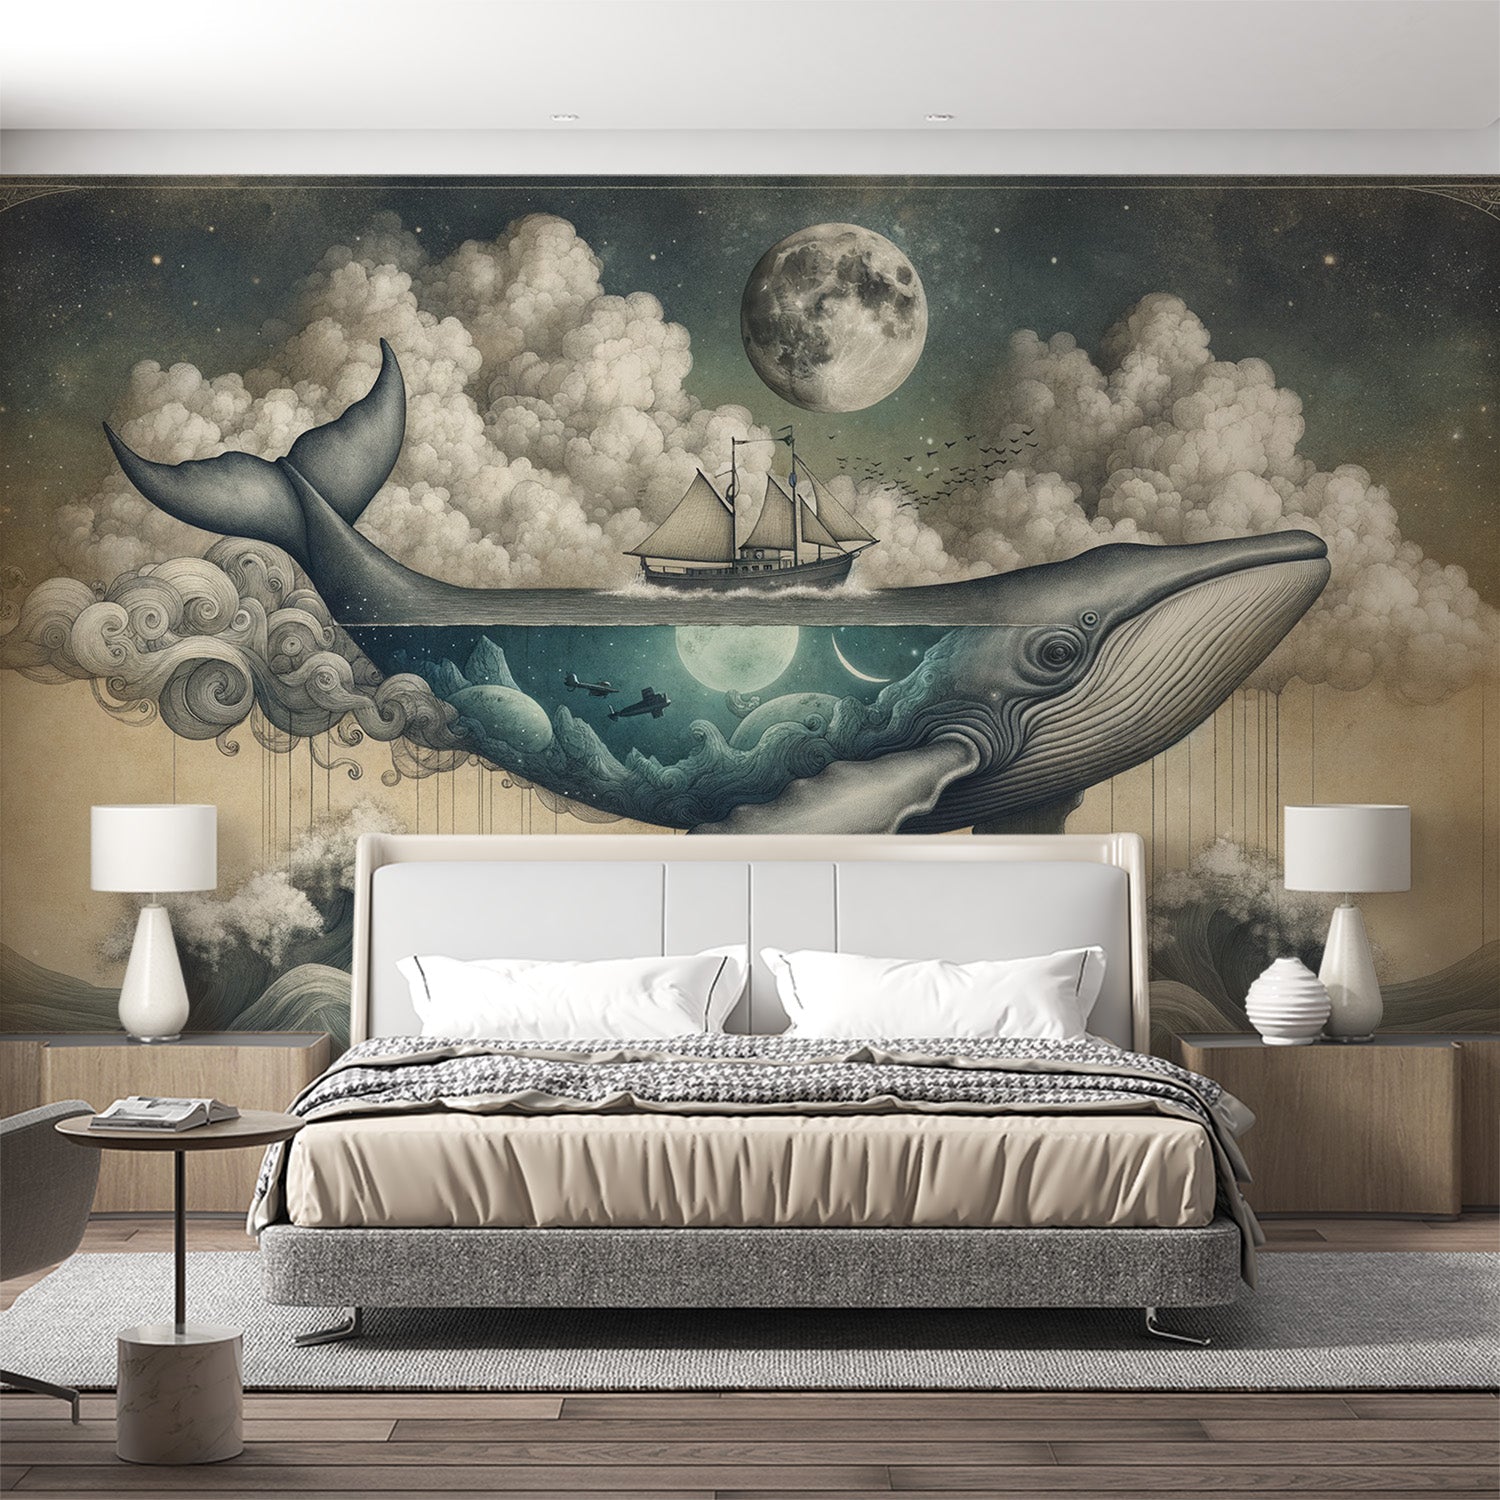  Papier peint baleine Baleine volante, navire et lune sur fond de nocturne et nuages cotonneux